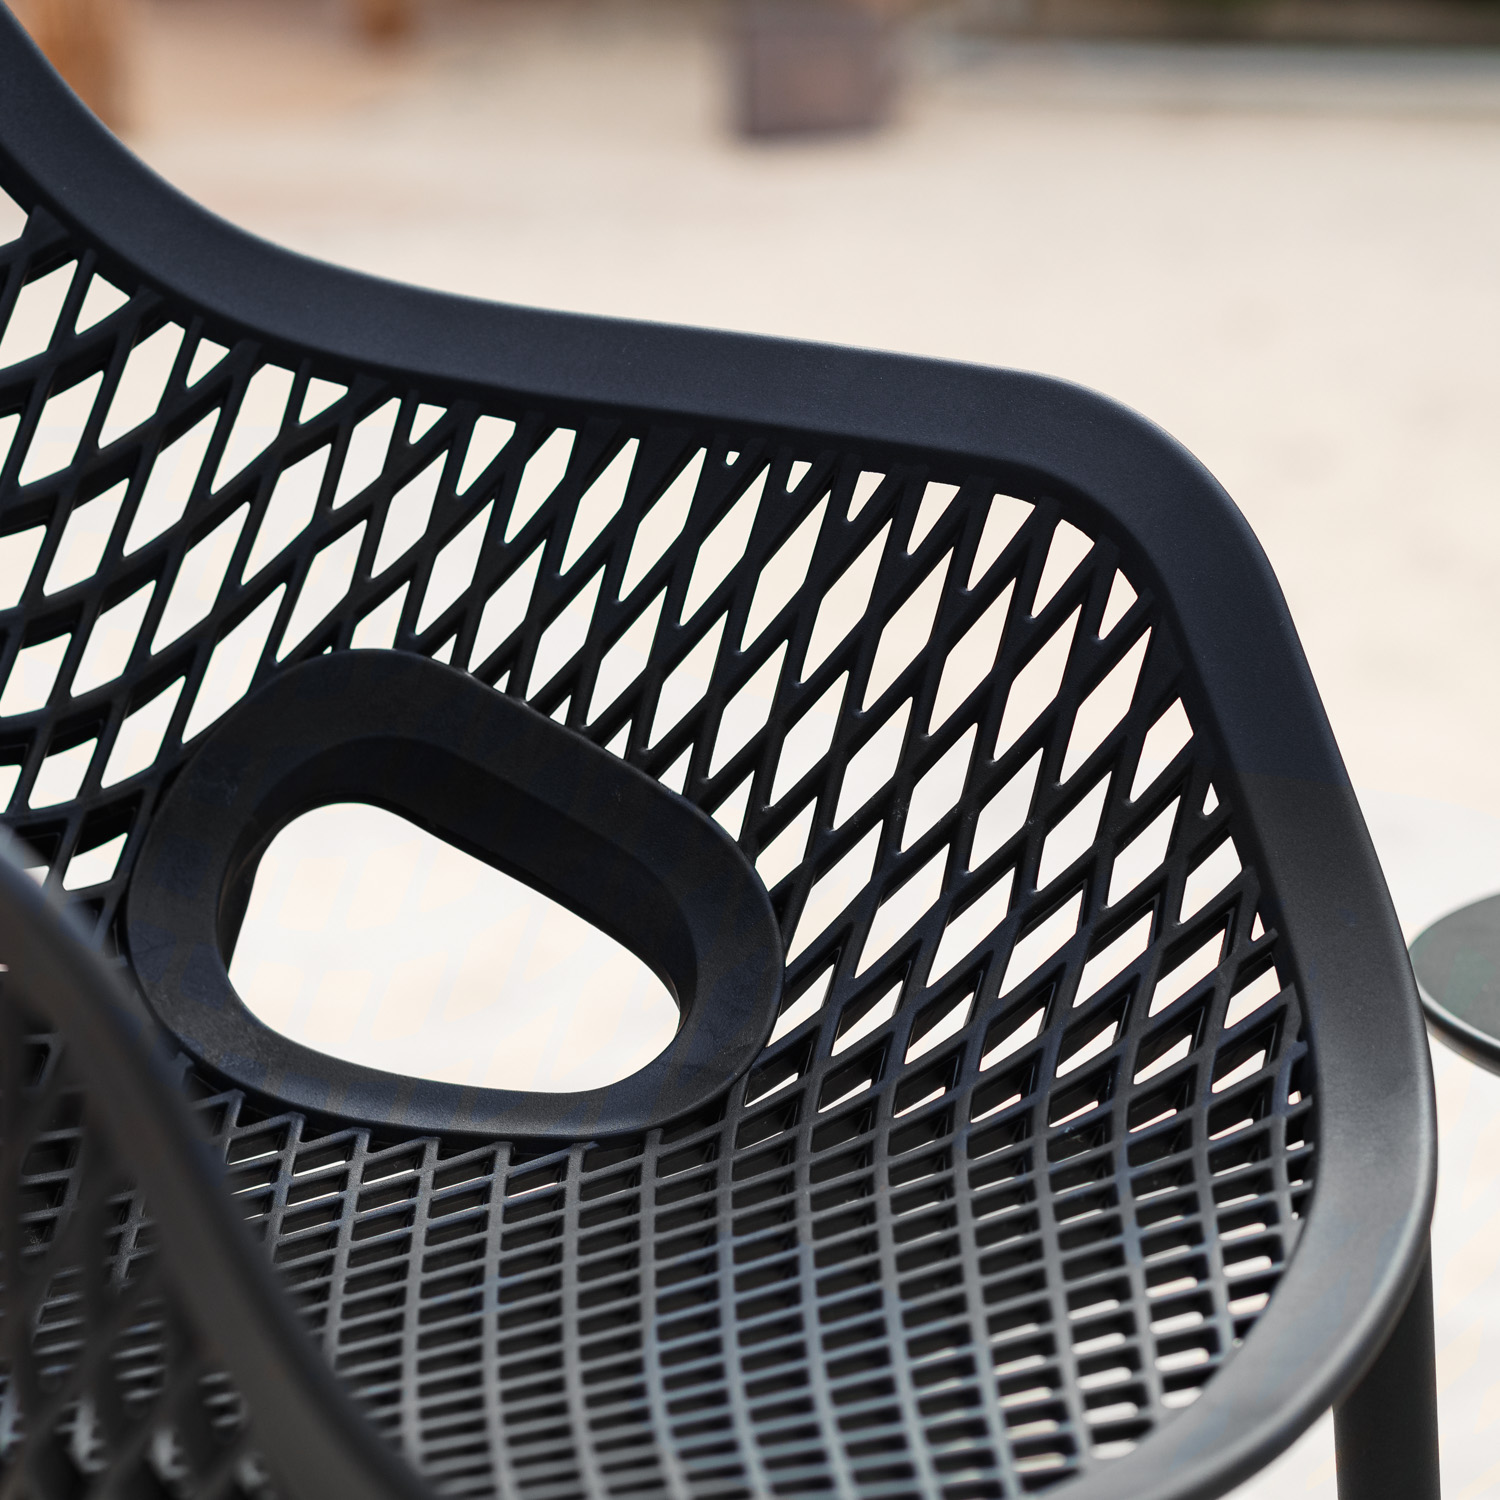 Chaise de jardin avec accoudoirs Noir Lot de 4 Fauteuils de jardin Plastique Chaises exterieur Chaises empilable